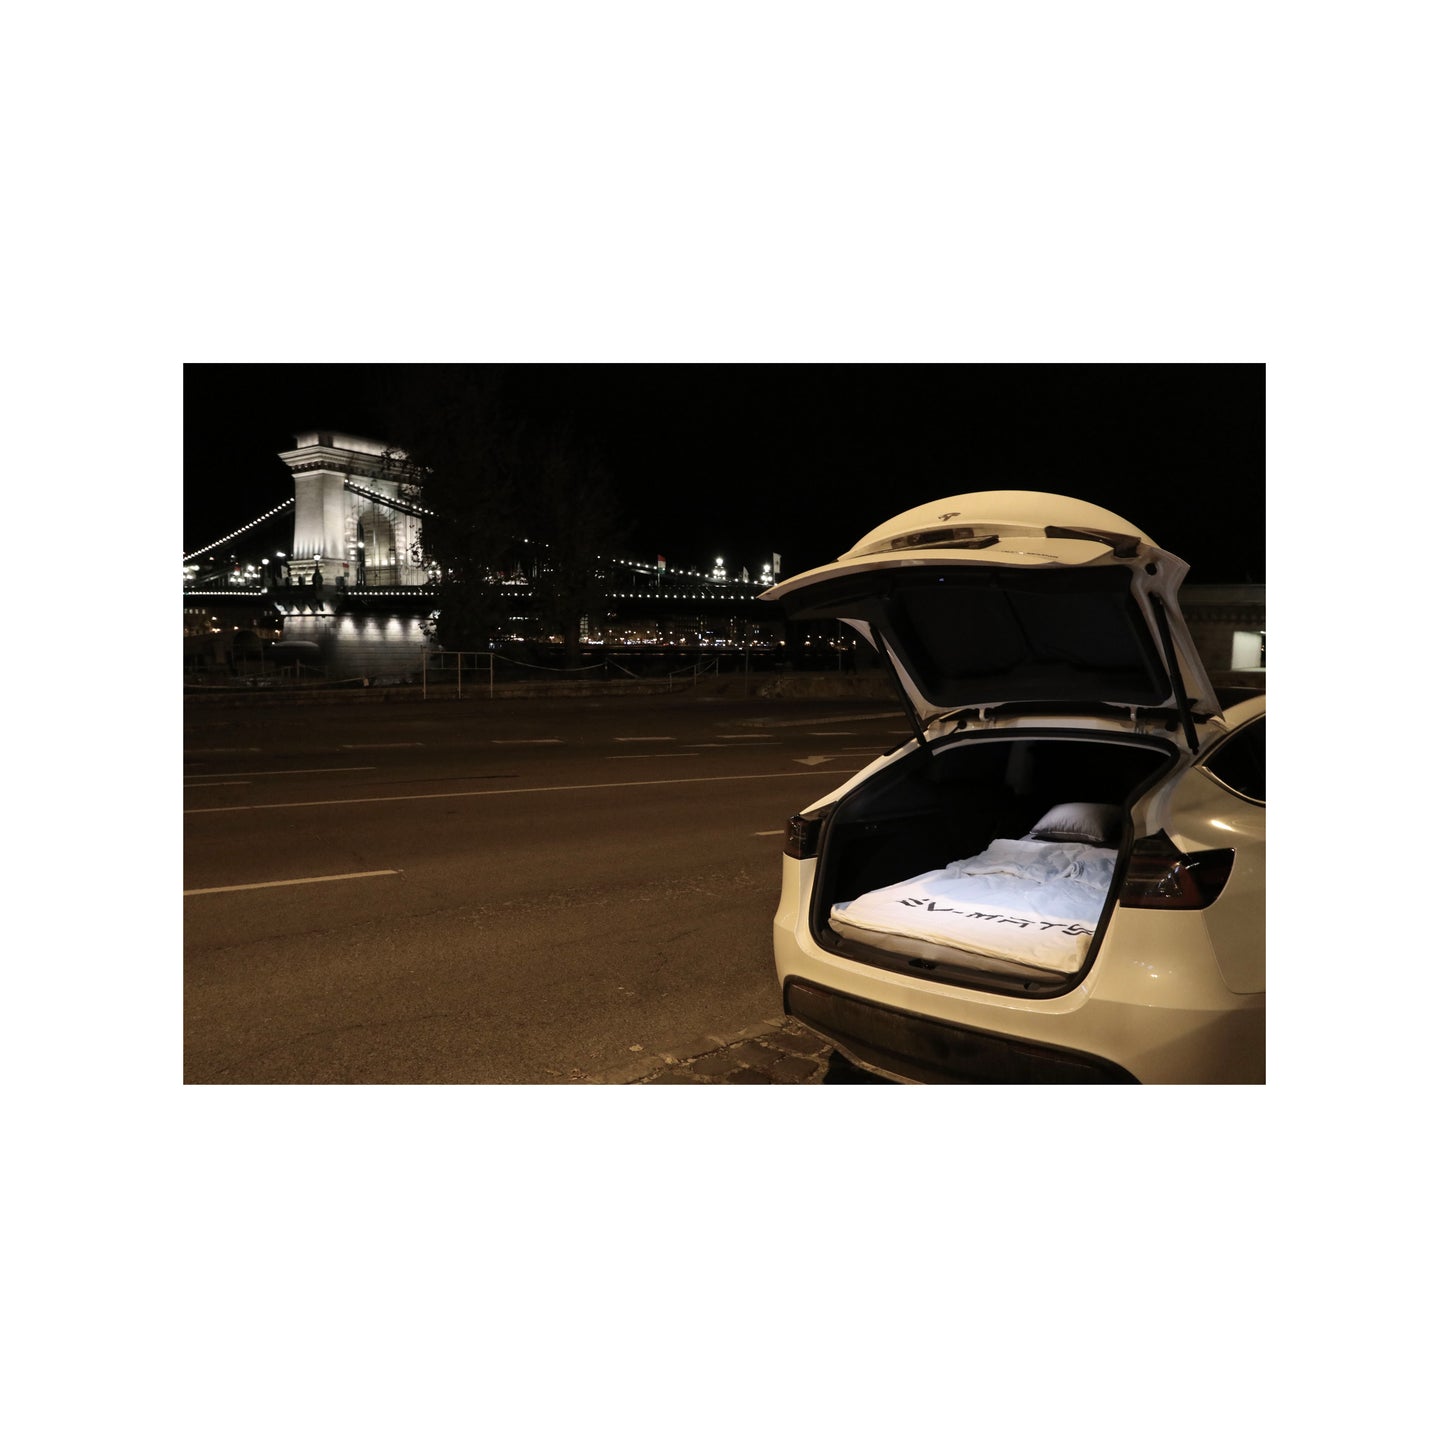  EV-MATS Basic CAMP SET Tesla Model 3-hoz, ami tartalmazza a Tesla matracot, a vízálló táskát, ami passzol a Tesla Model 3 hátsó csomagtartójába, egy lepedőt, egy paplant, 2 párnát és párnahuzatot